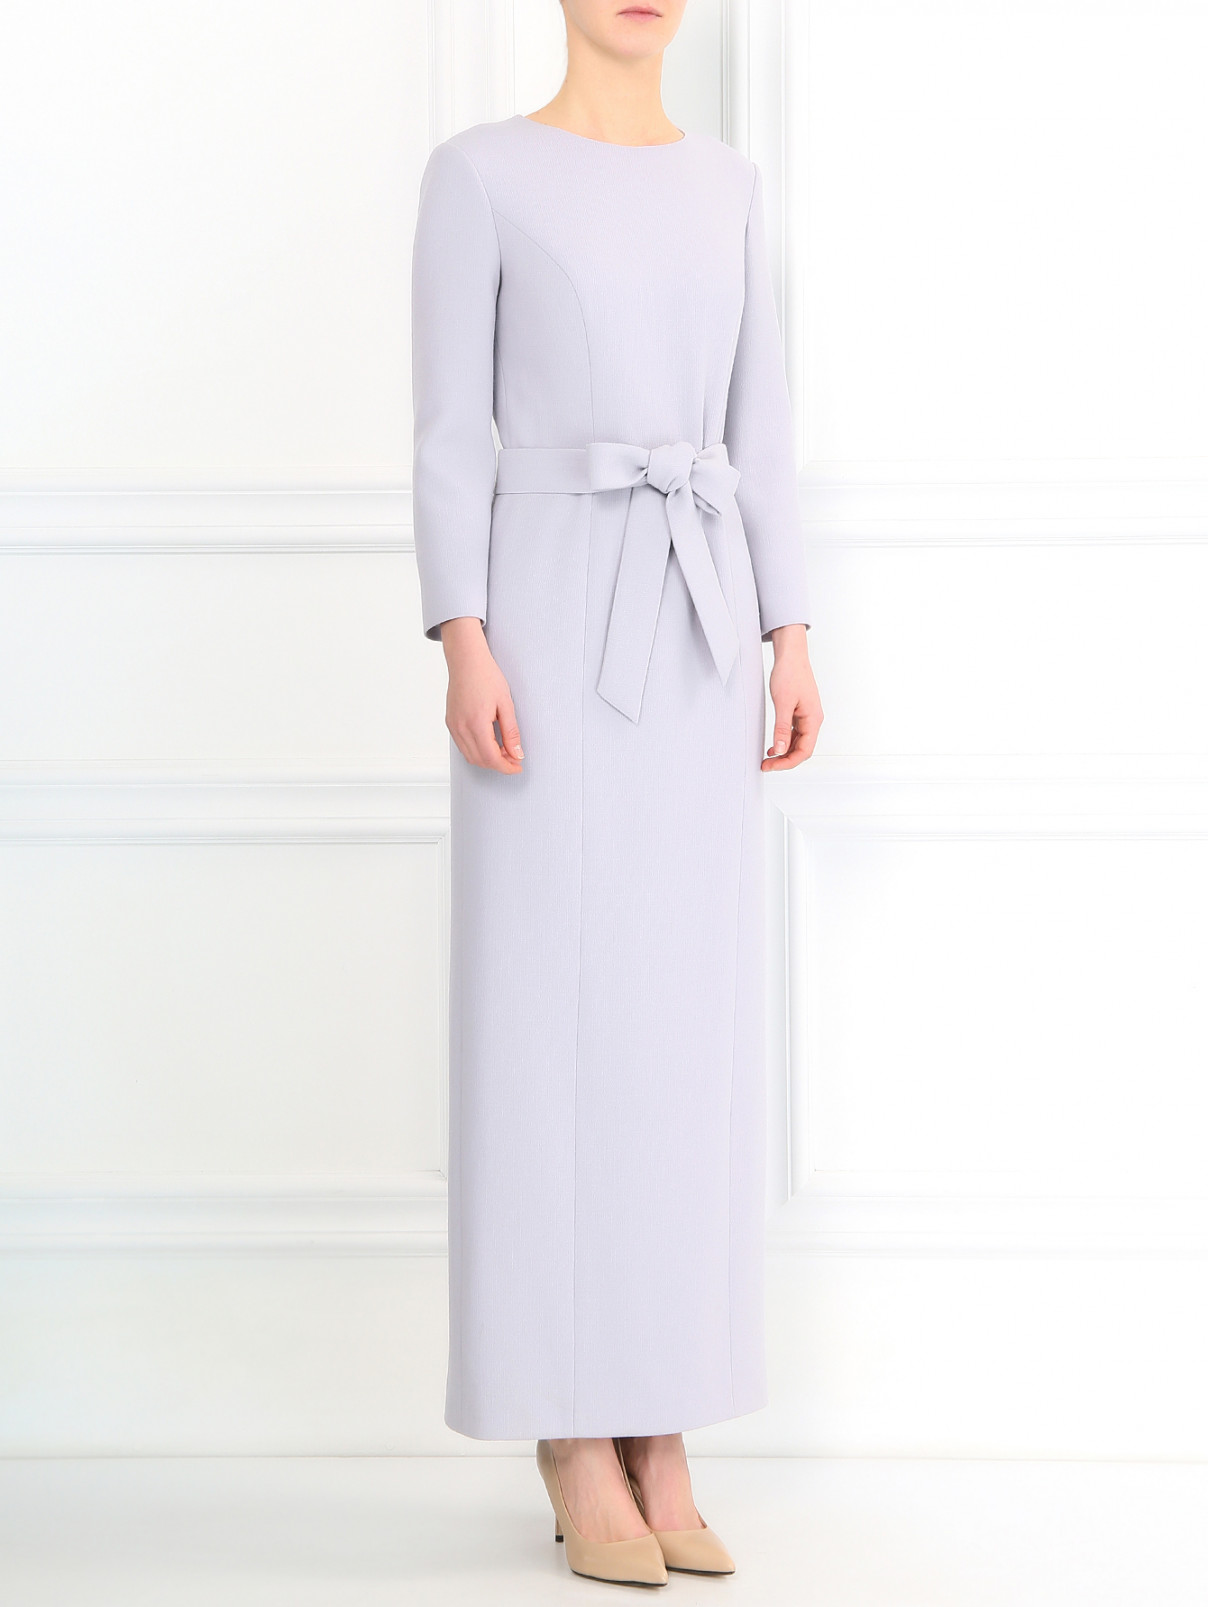 Платье-макси из шерсти A La Russe  –  Модель Общий вид  – Цвет:  Фиолетовый